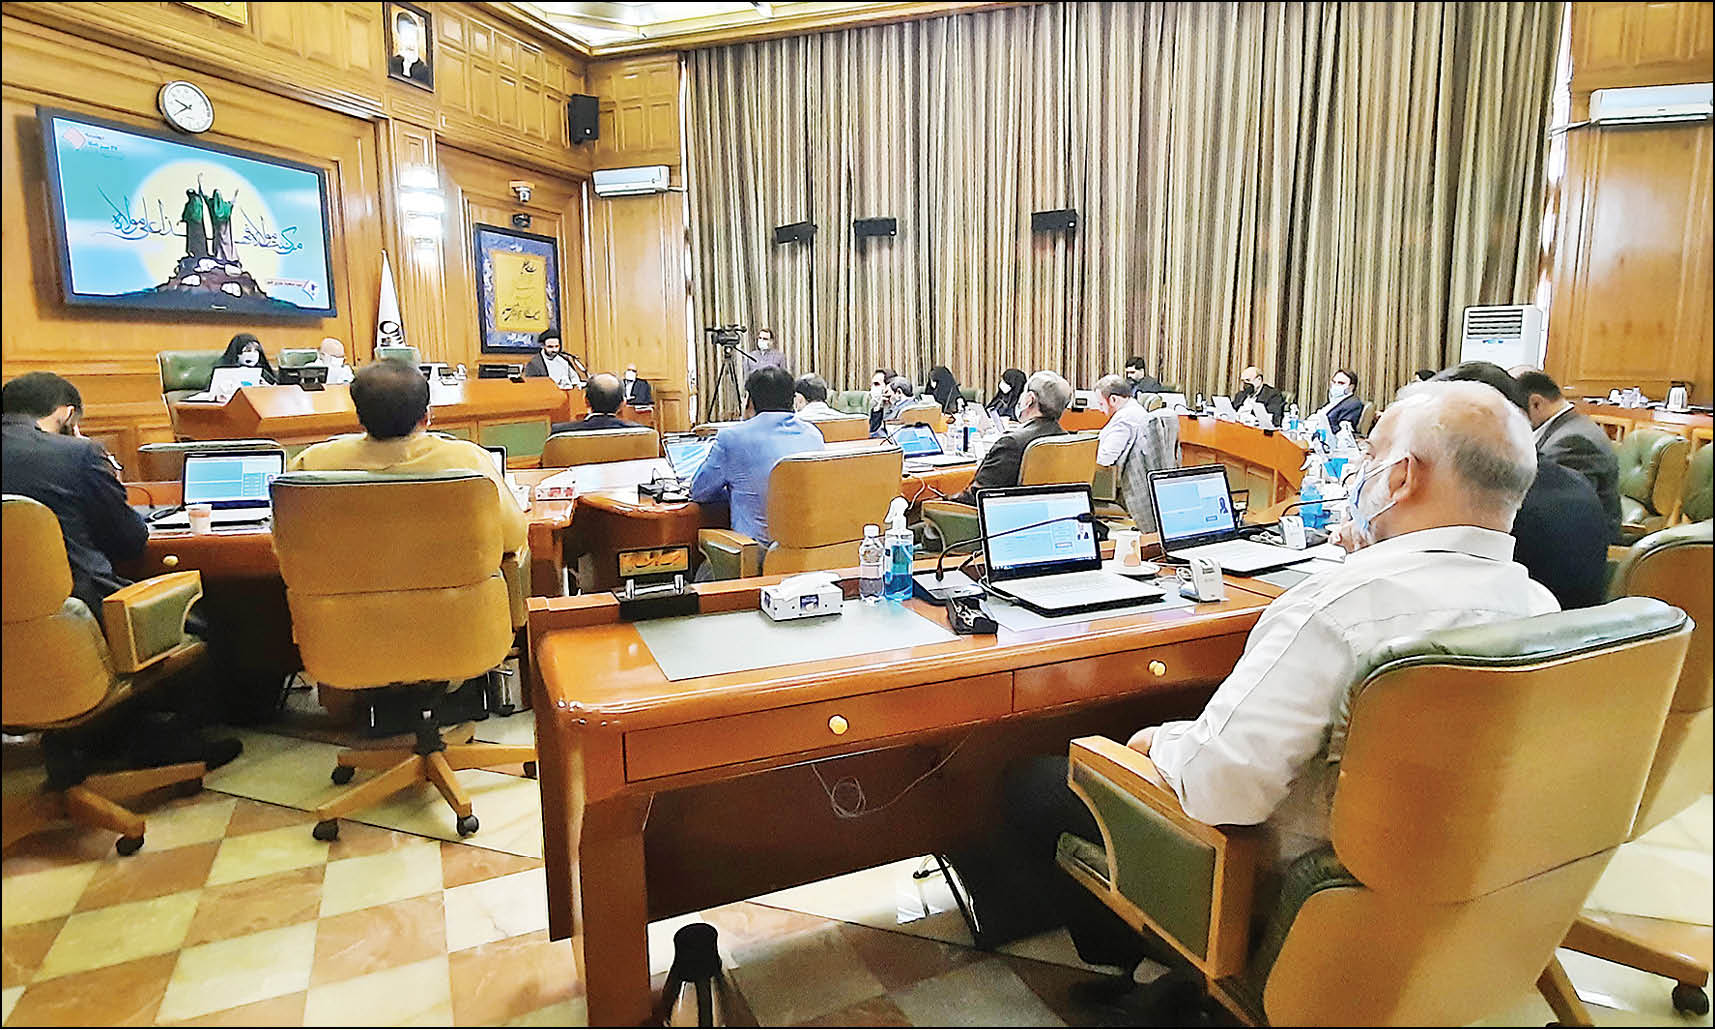 اعضای شورای ششم شهر تهران از عدم ارائه گزارش حسابرسی دوره پیشین مدیریت شهری خبر دادند